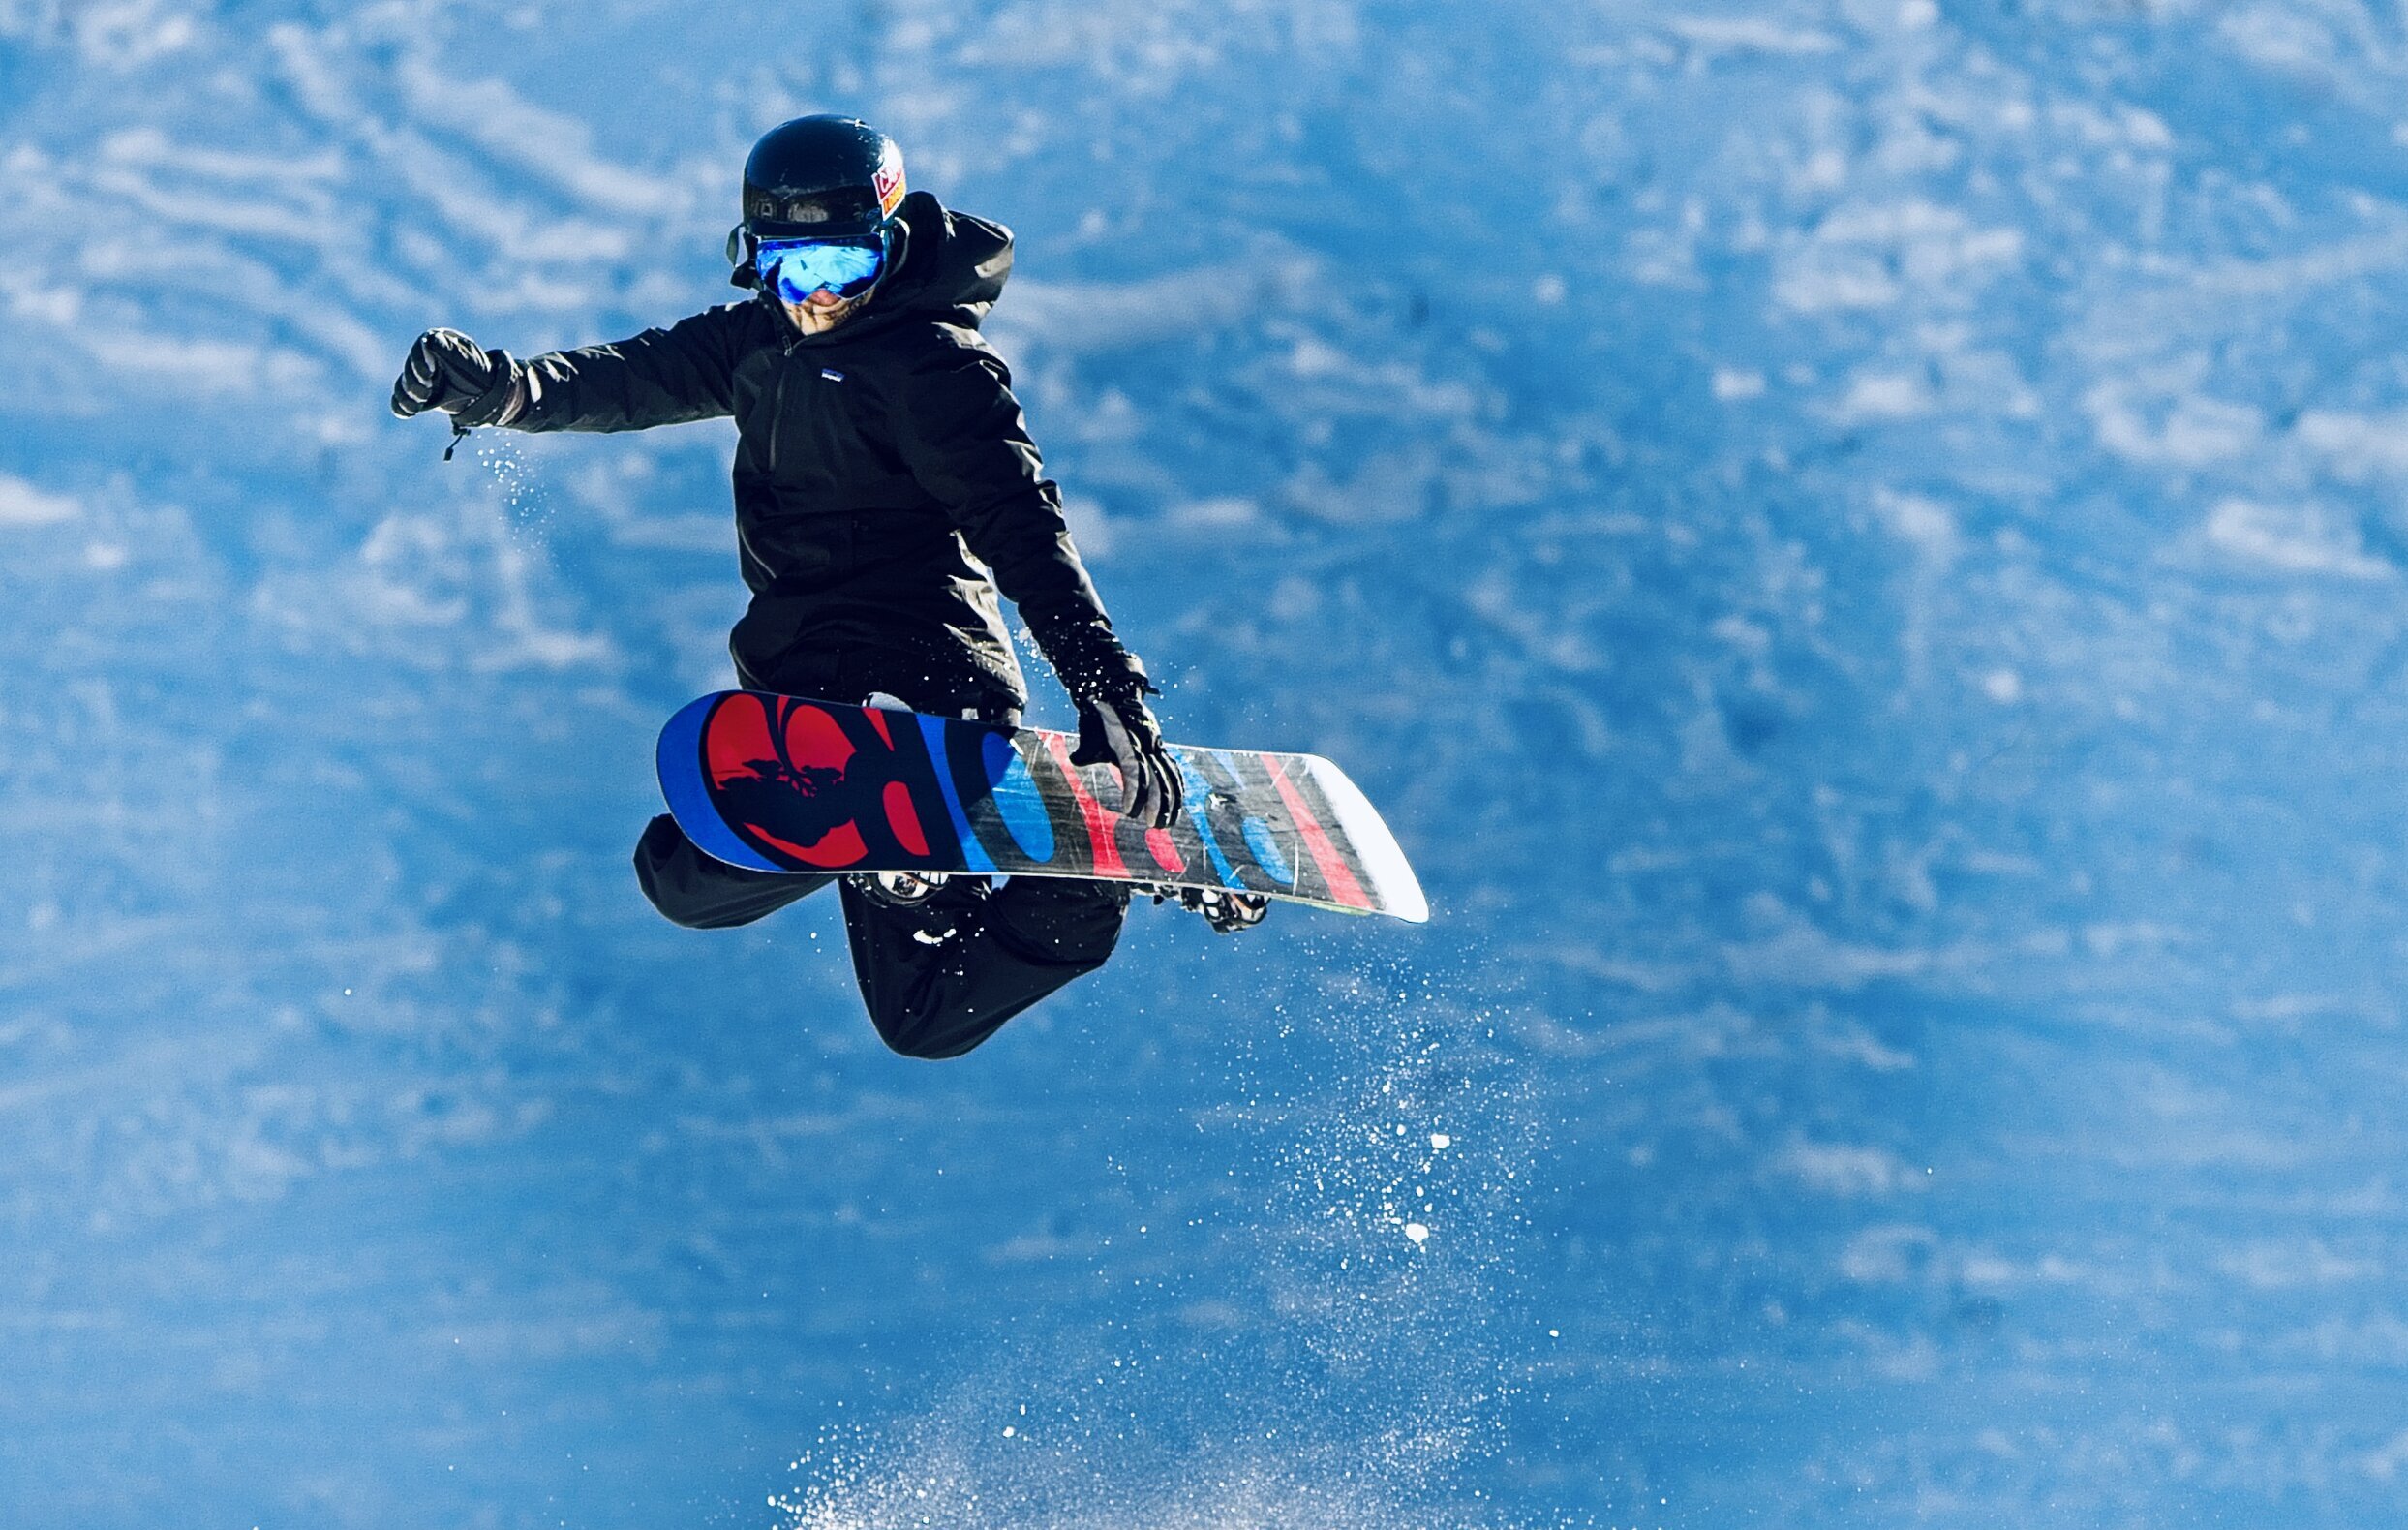 Snowboarder in midair